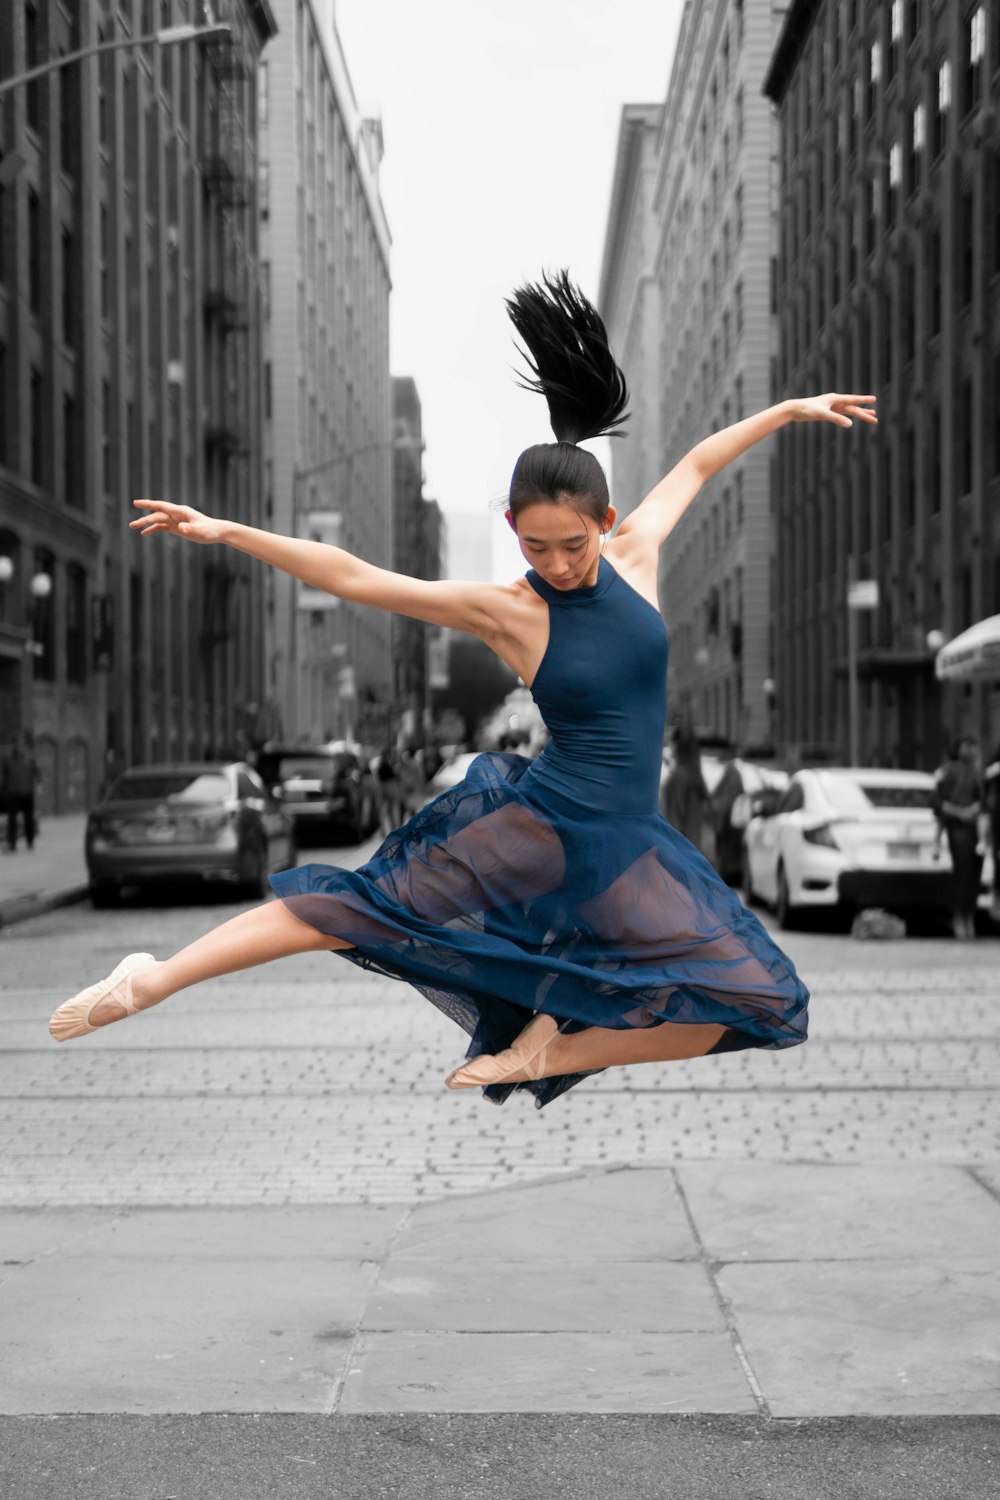 jumping ballerina wearing blue dress during daytime photo – Free Dance  Image on Unsplash